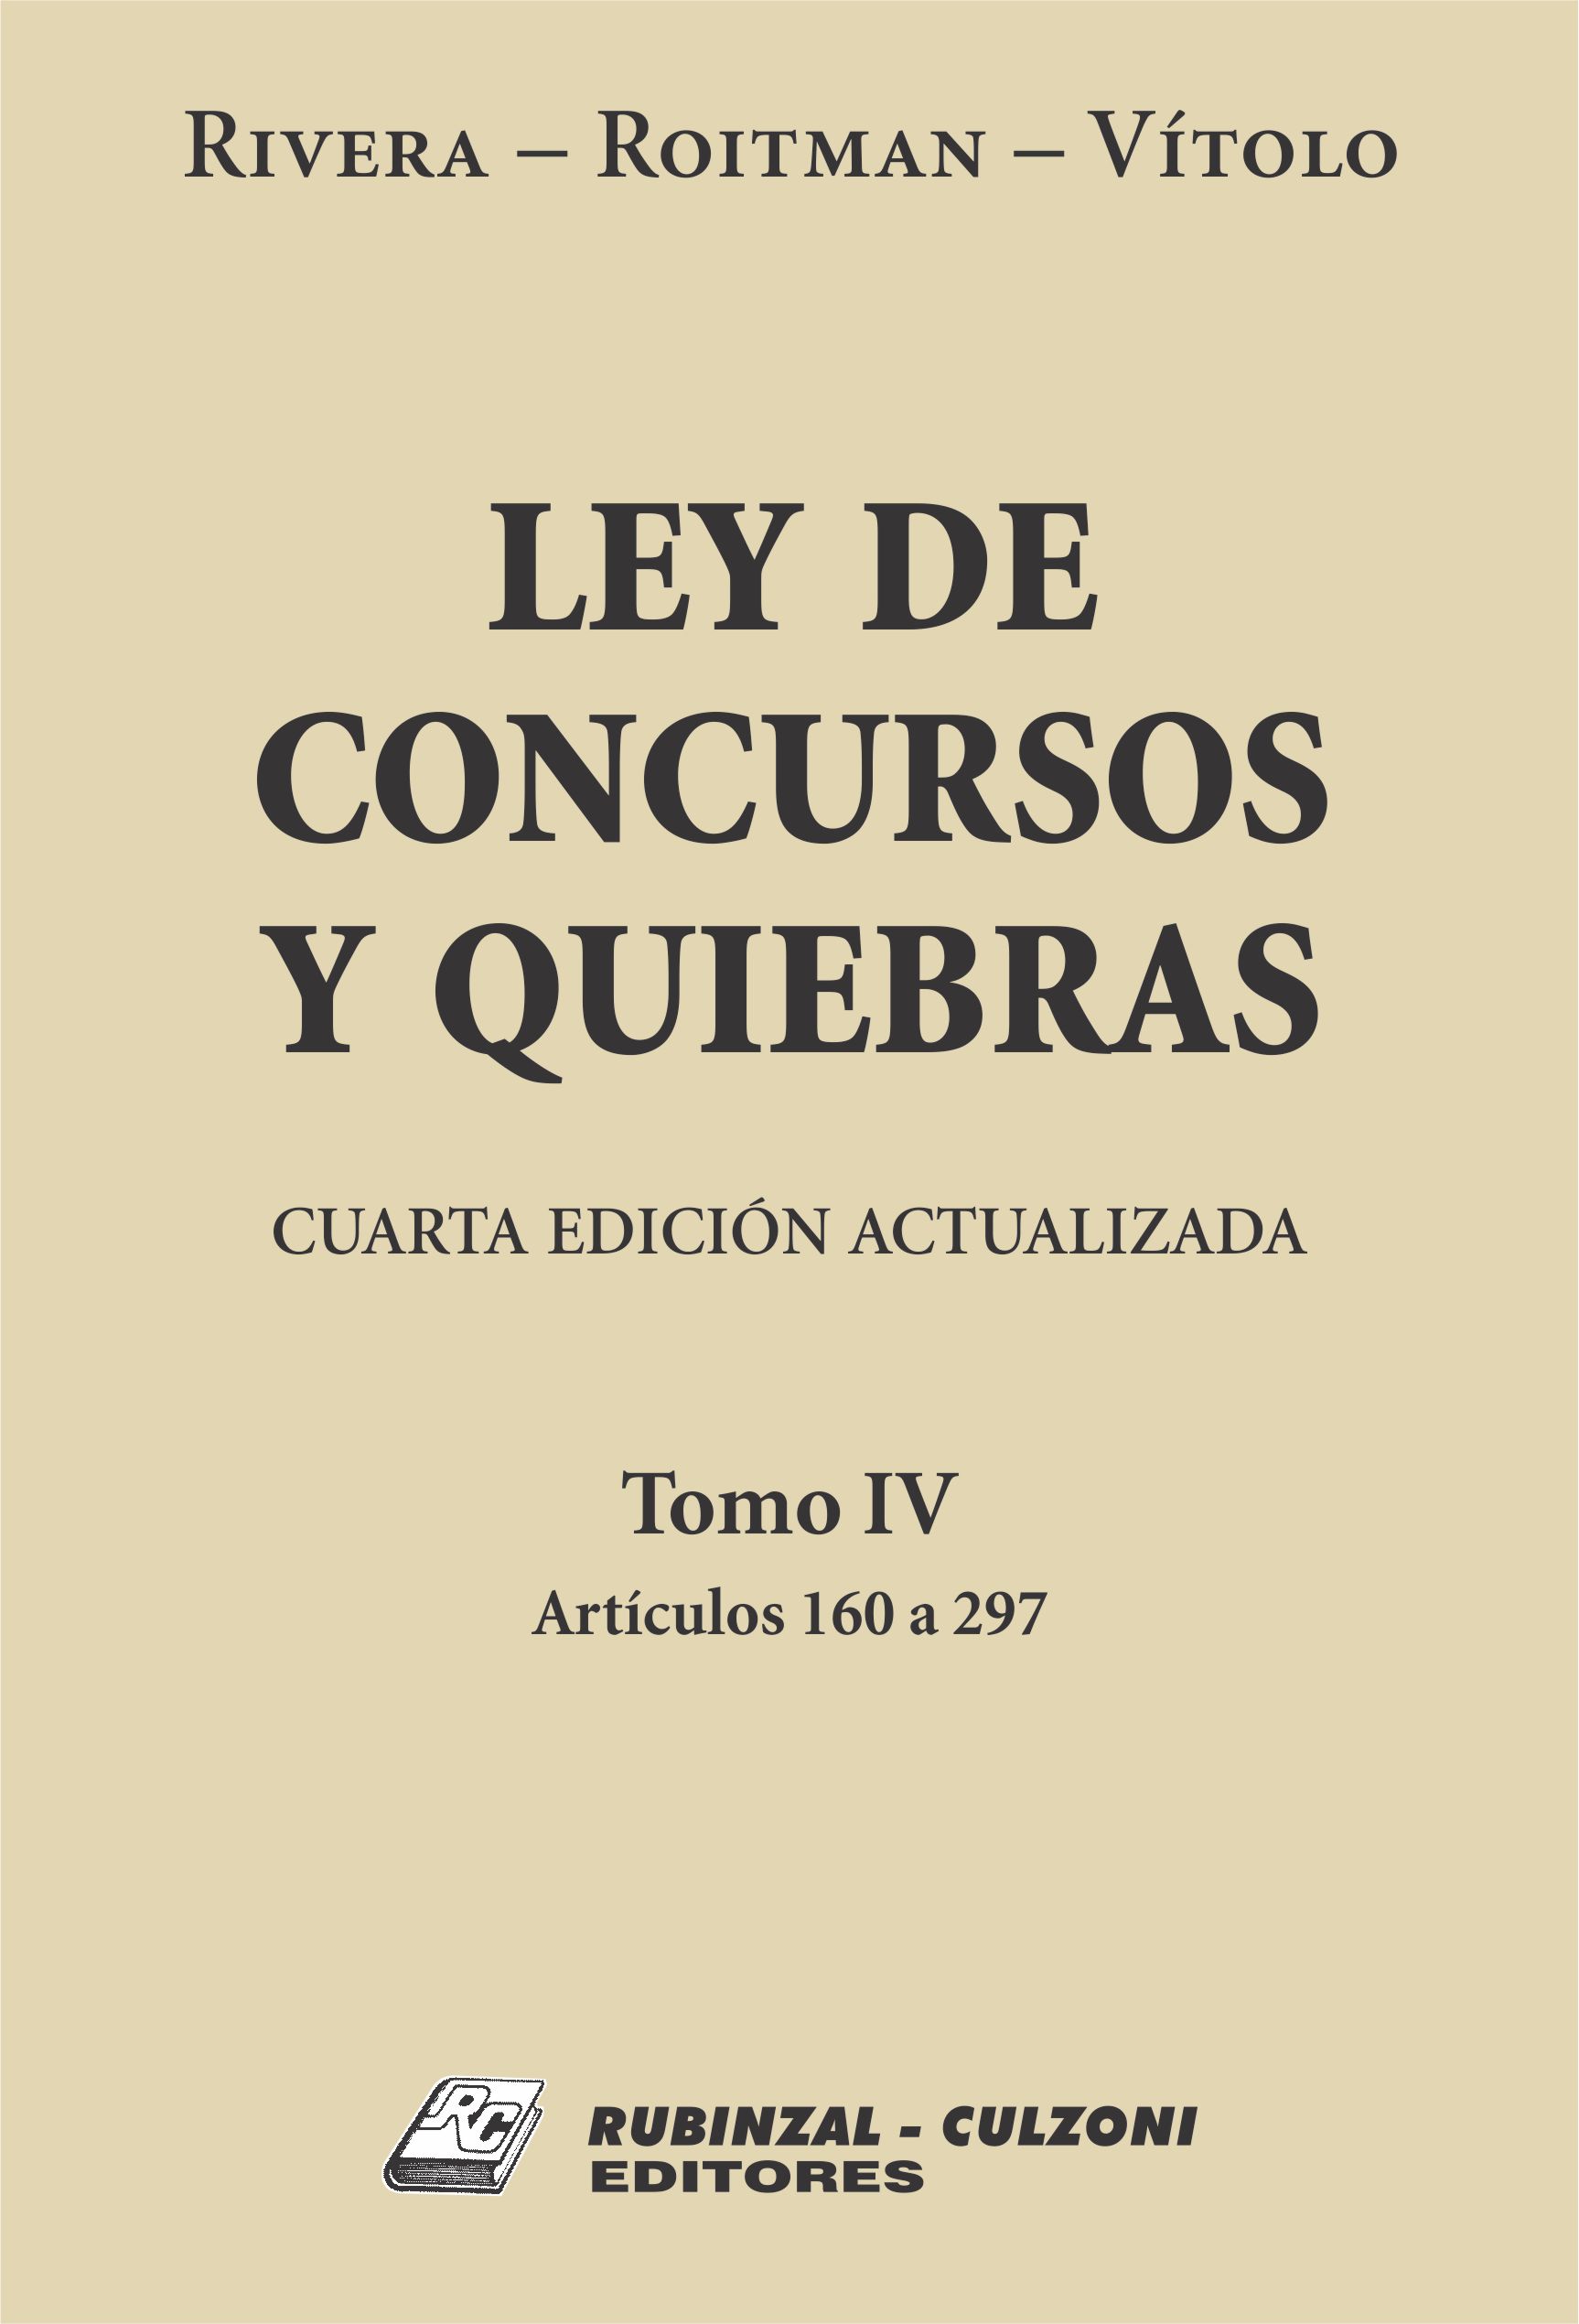 Ley de Concursos y Quiebras. - Tomo IV (Artículos 160 a 297). 4ª Edición actualizada.